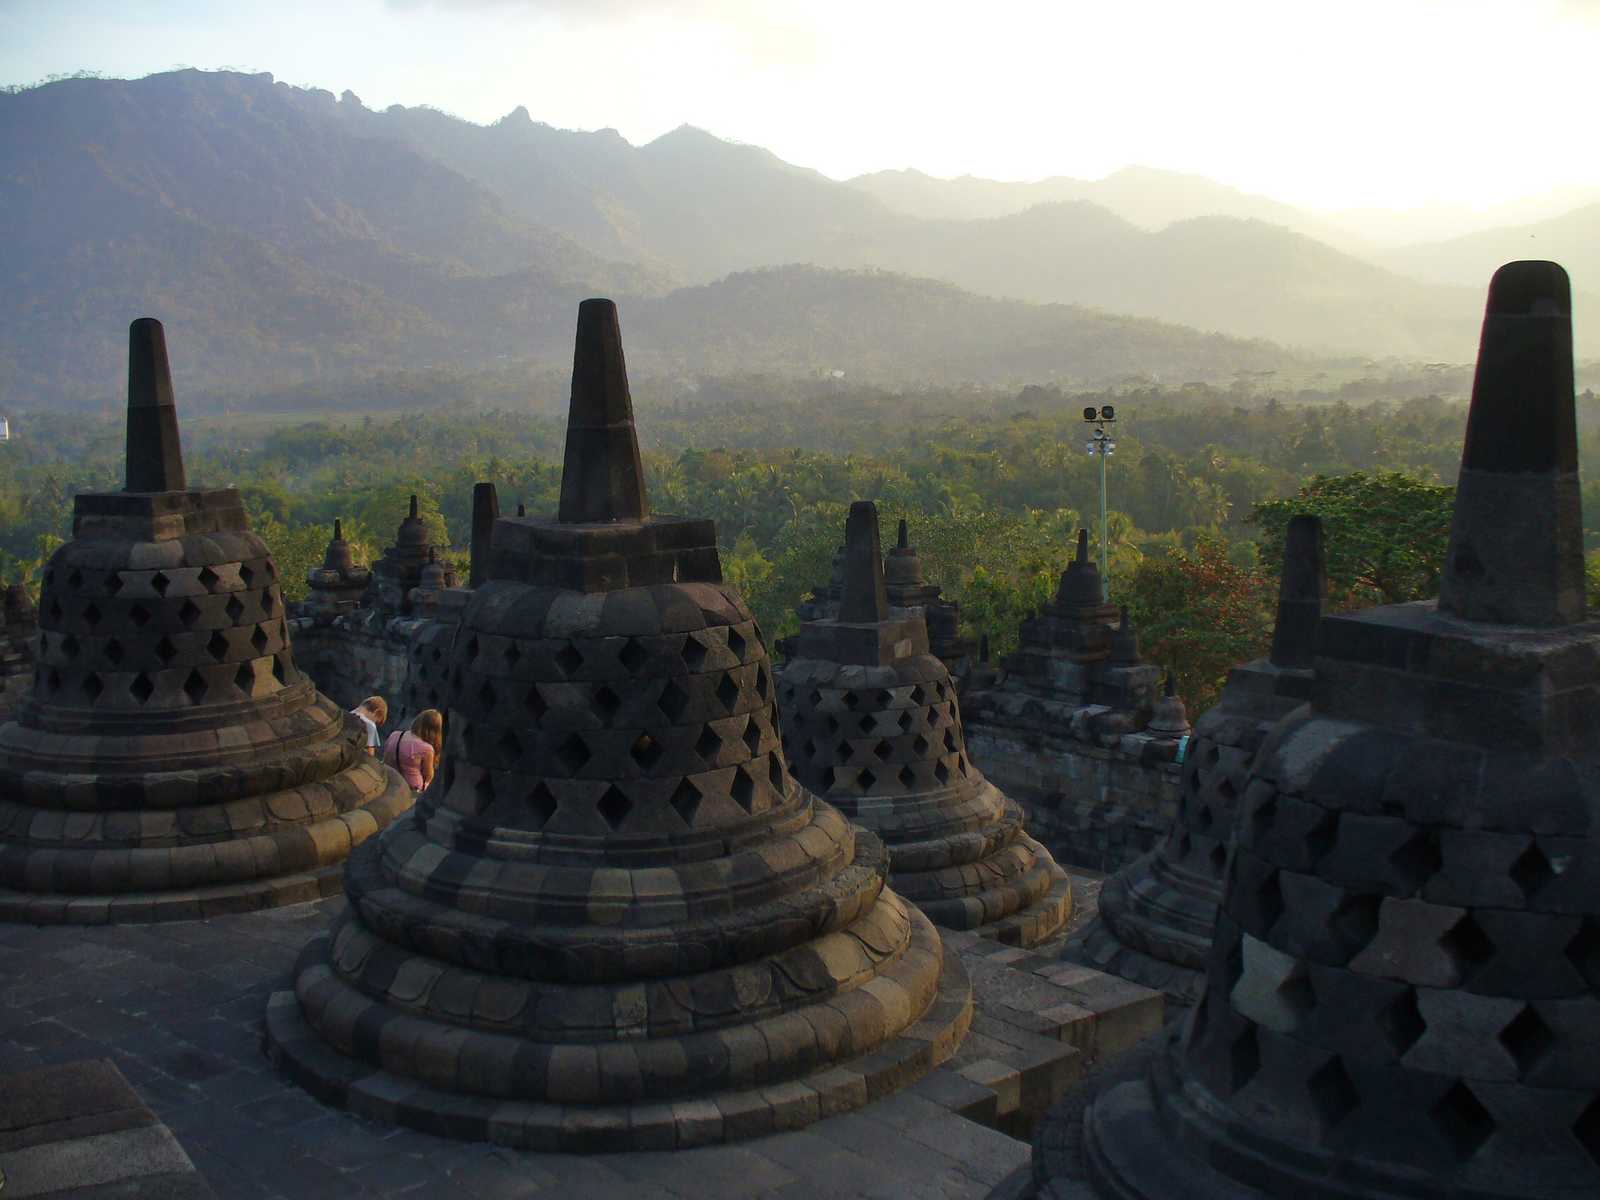 Image Java et Bali, entre culture et volcans